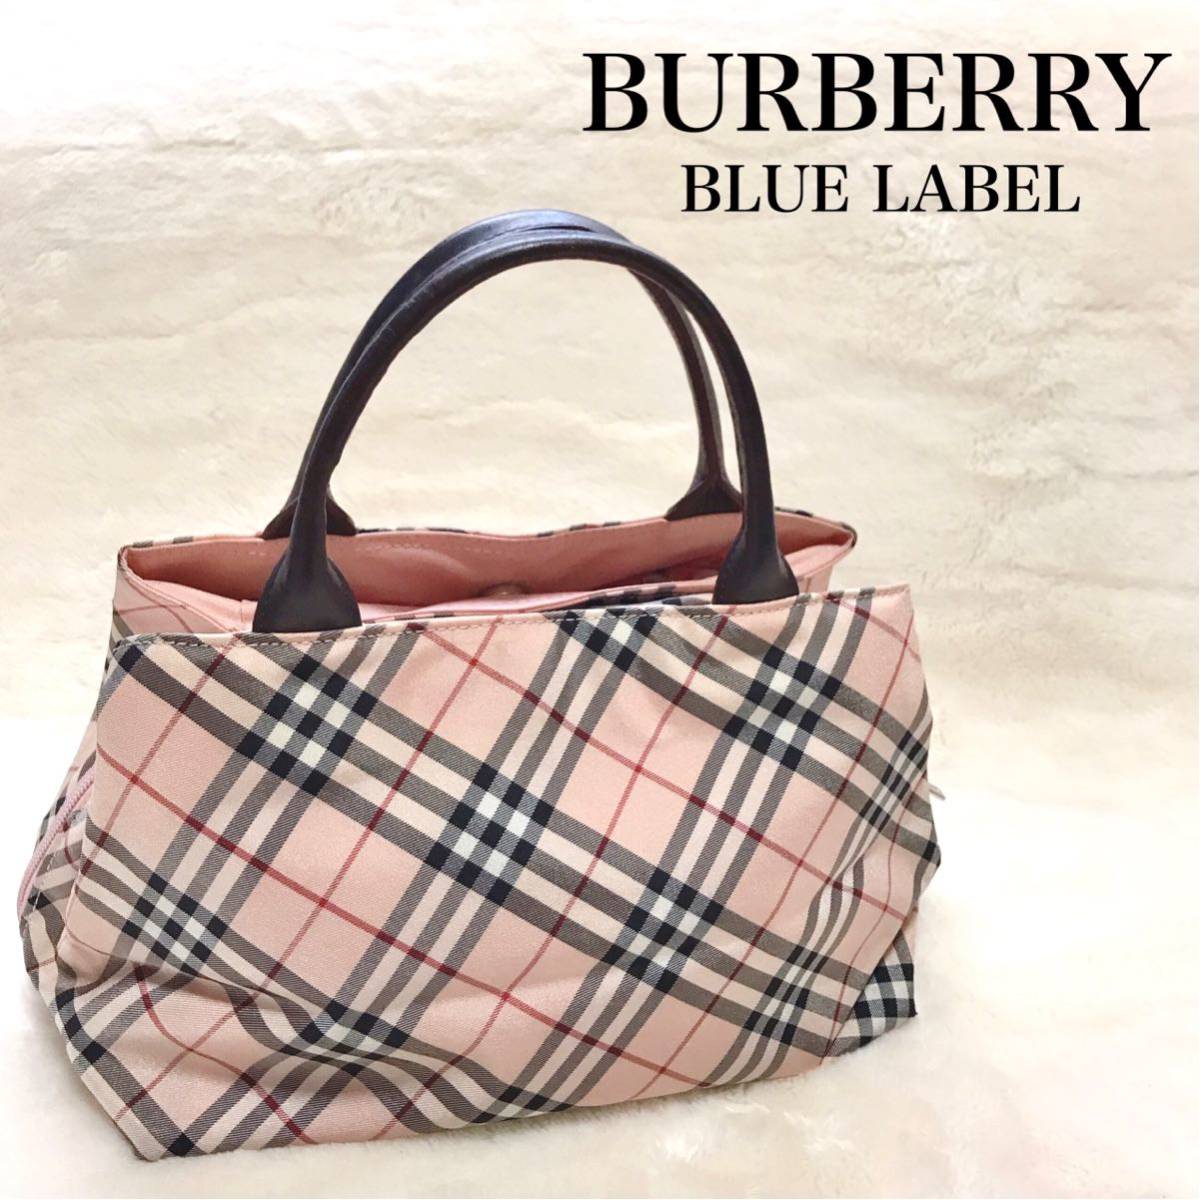 【美品】BURBERRY BLUE LABEL 変形 ハンドバッグ トートバッグ バーバリーブルーレーベル 軽量 ノバチェック ピンク レザー  ナイロン 鞄